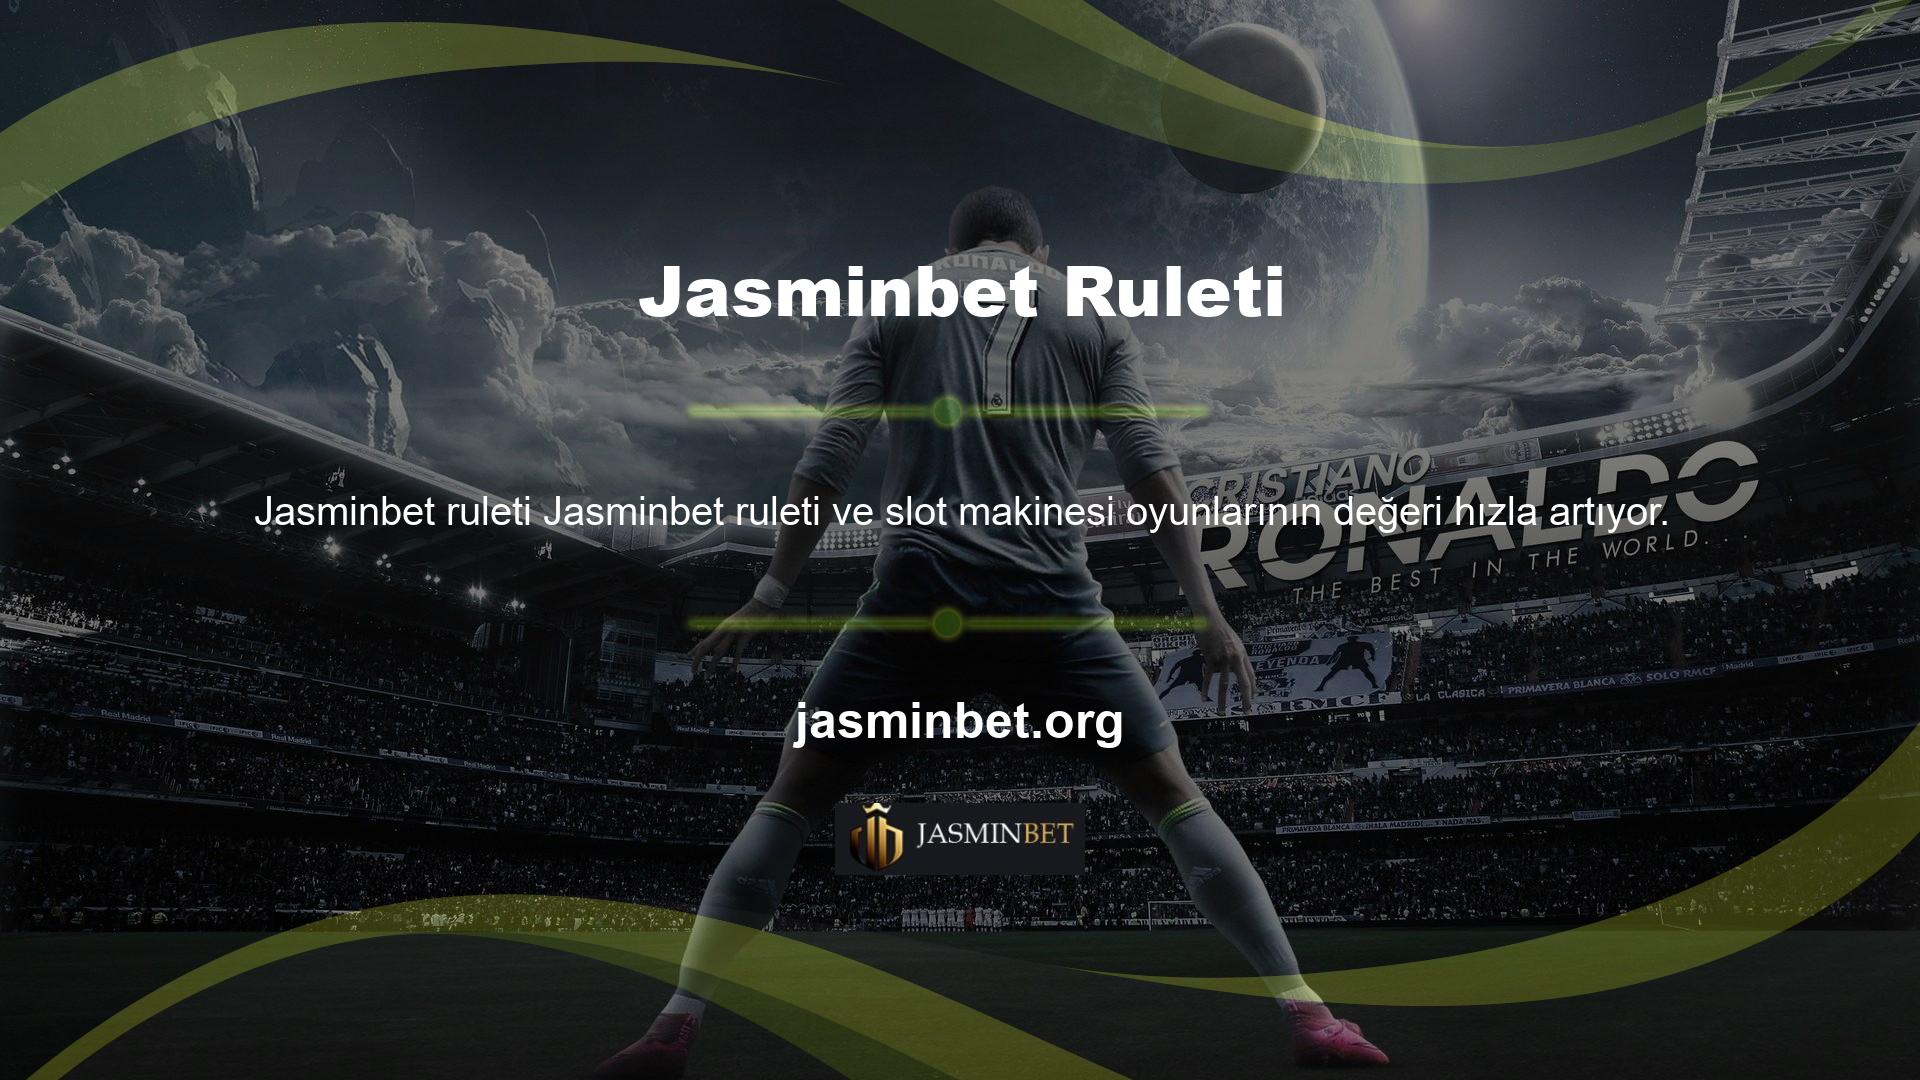 Jasminbet rulet slotları ve rulet oyunları, her oyuncuya en kısa sürede büyük para kazanma fırsatı sunarak milyonlarca Türk oyuncuyu zenginleştirmekte ve bu oyunları piyasada başarıyla yaygınlaştırmaktadır